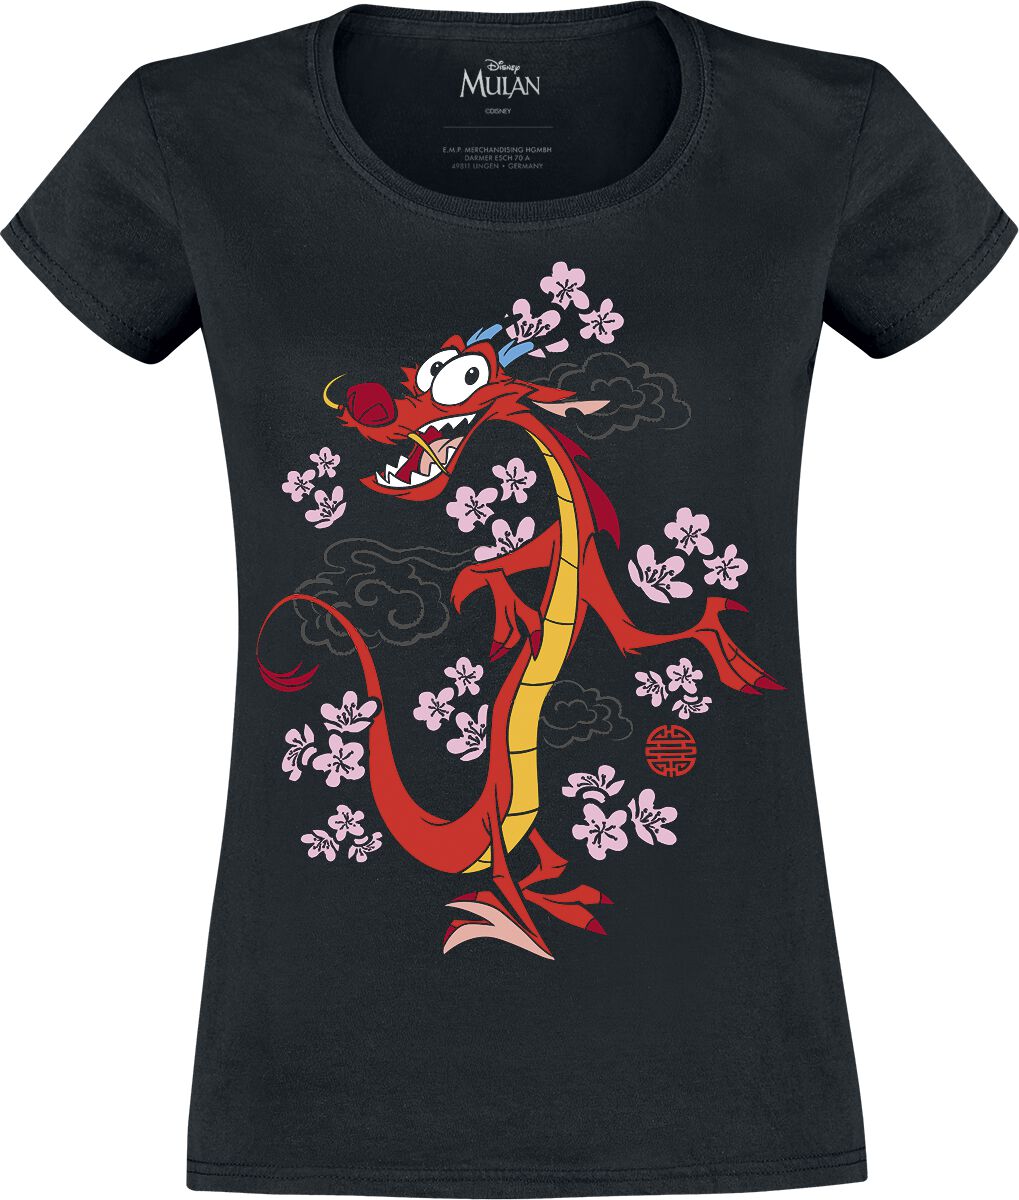 T-Shirt Manches courtes Disney de Mulan - Mushu - S à XXL - pour Femme - noir